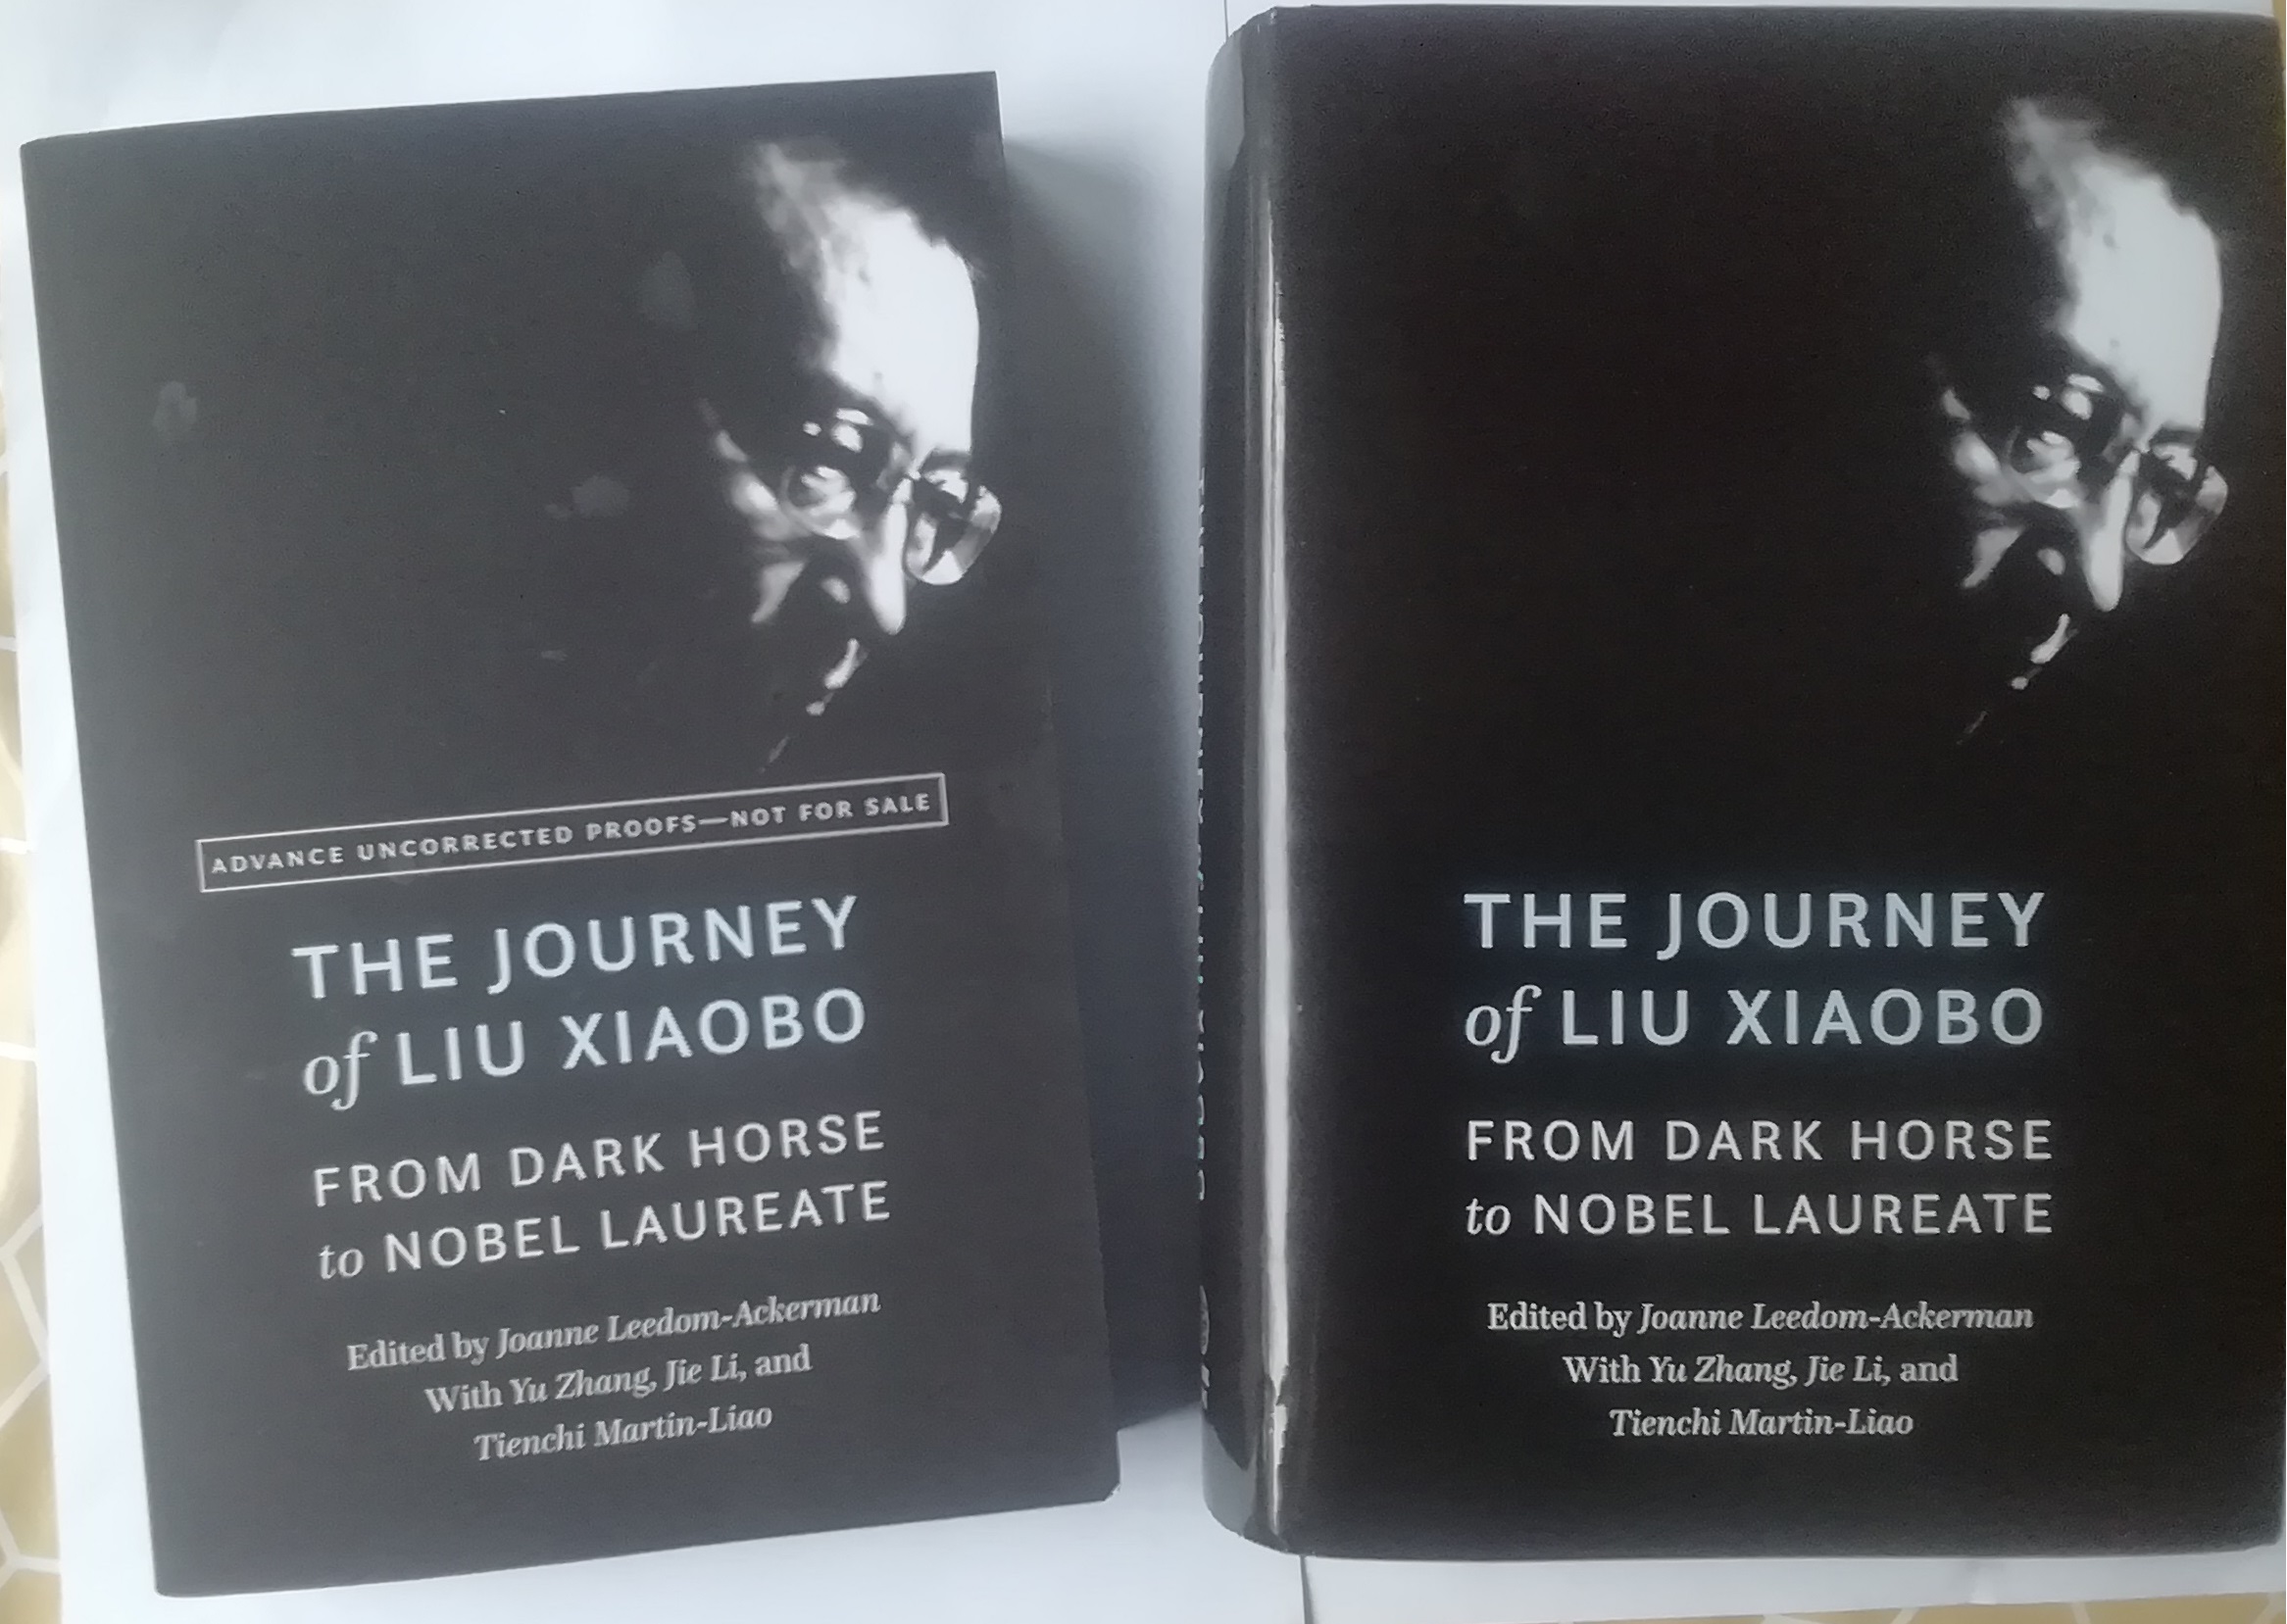 刘晓波纪念文集》英文版将在美国出版– 独立中文笔会